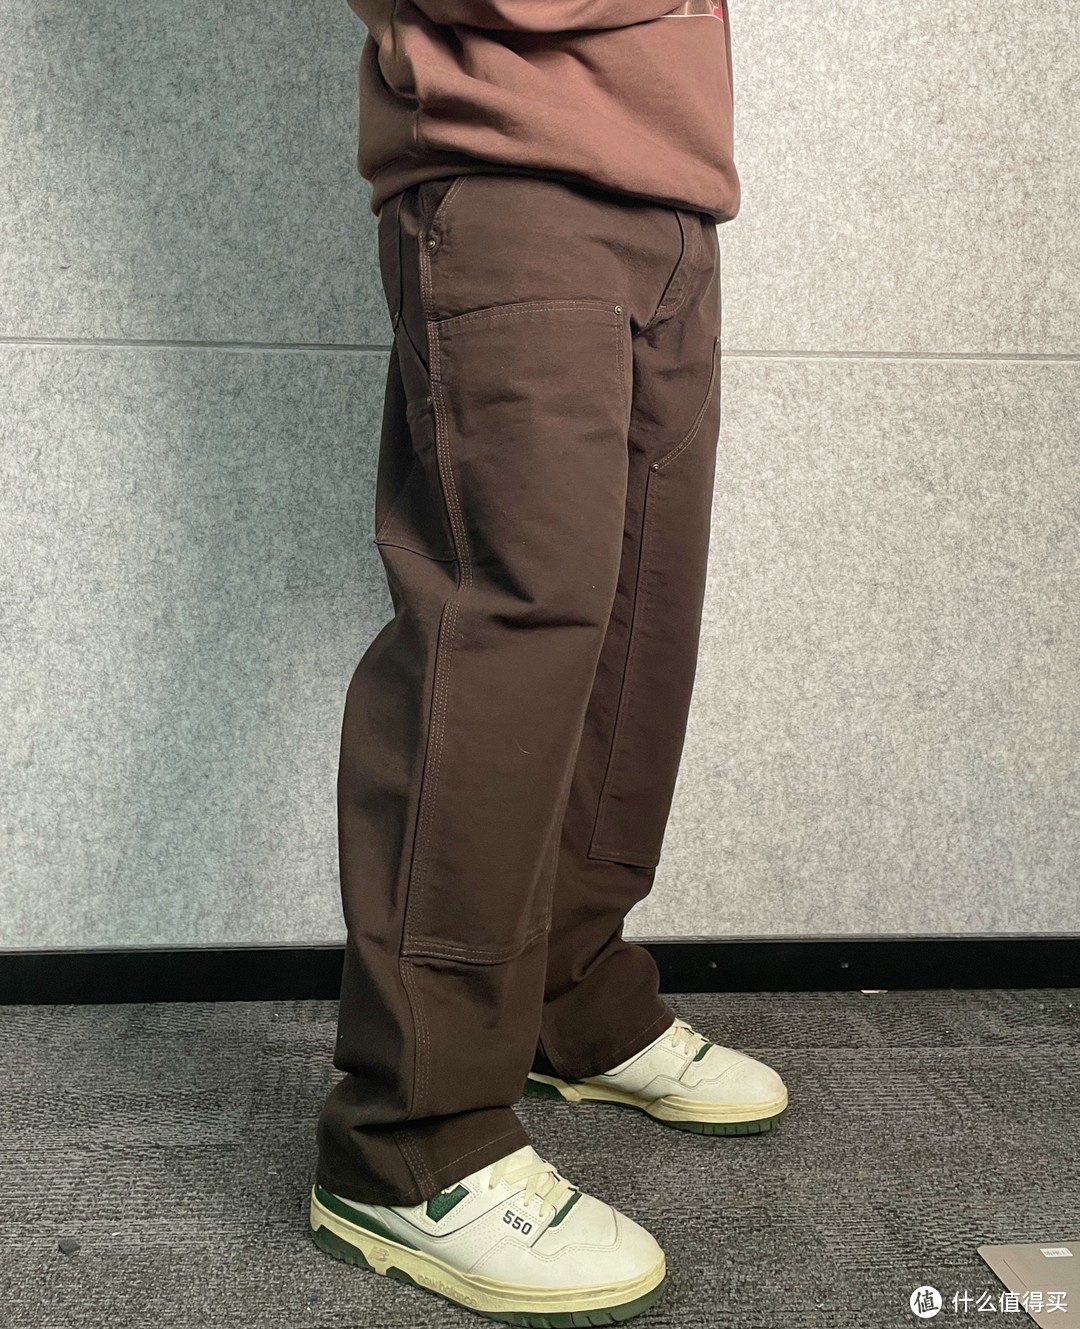 炒到几千块？5条Carhartt长裤上身对比看看哪款值得买？﻿